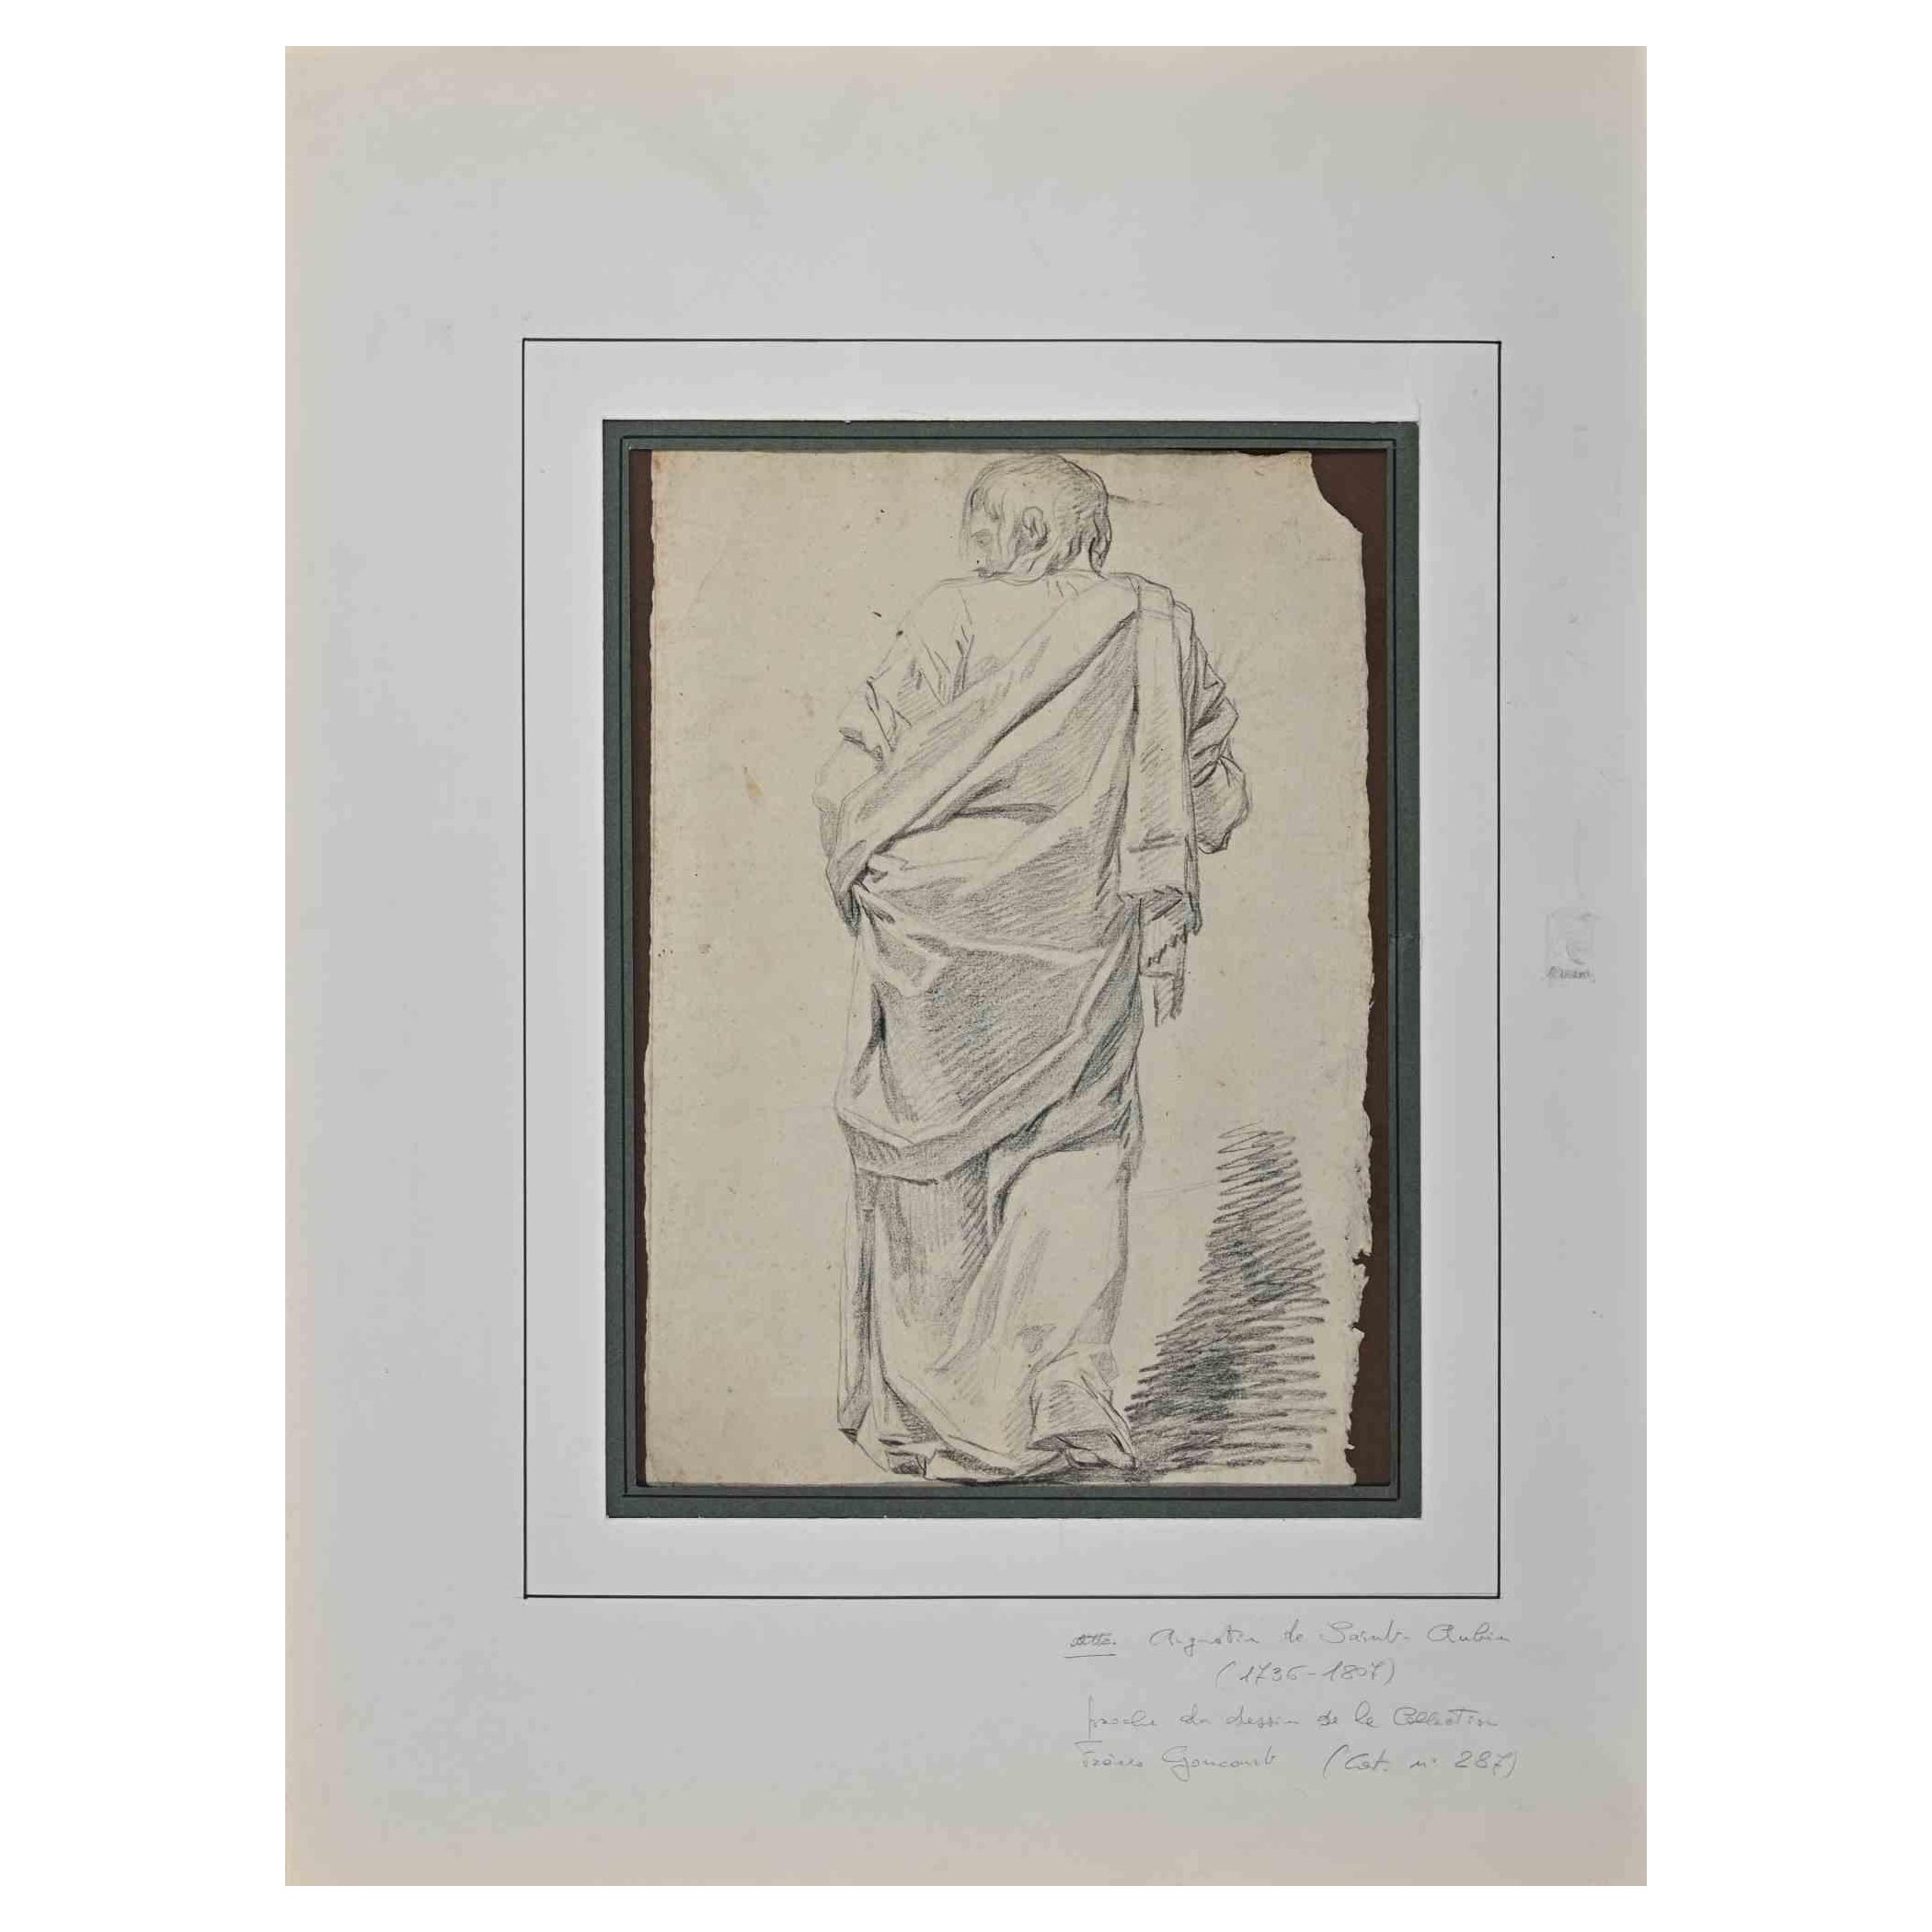 Figur des Menschen ist eine Original-Bleistiftzeichnung von Augustin de Saint-Aubin (1736-1807).

Guter Zustand, einschließlich eines grün-weißen Passepartouts aus Karton (65x48 cm).

Keine Unterschrift.

Augustin de Saint-Aubin, manchmal auch